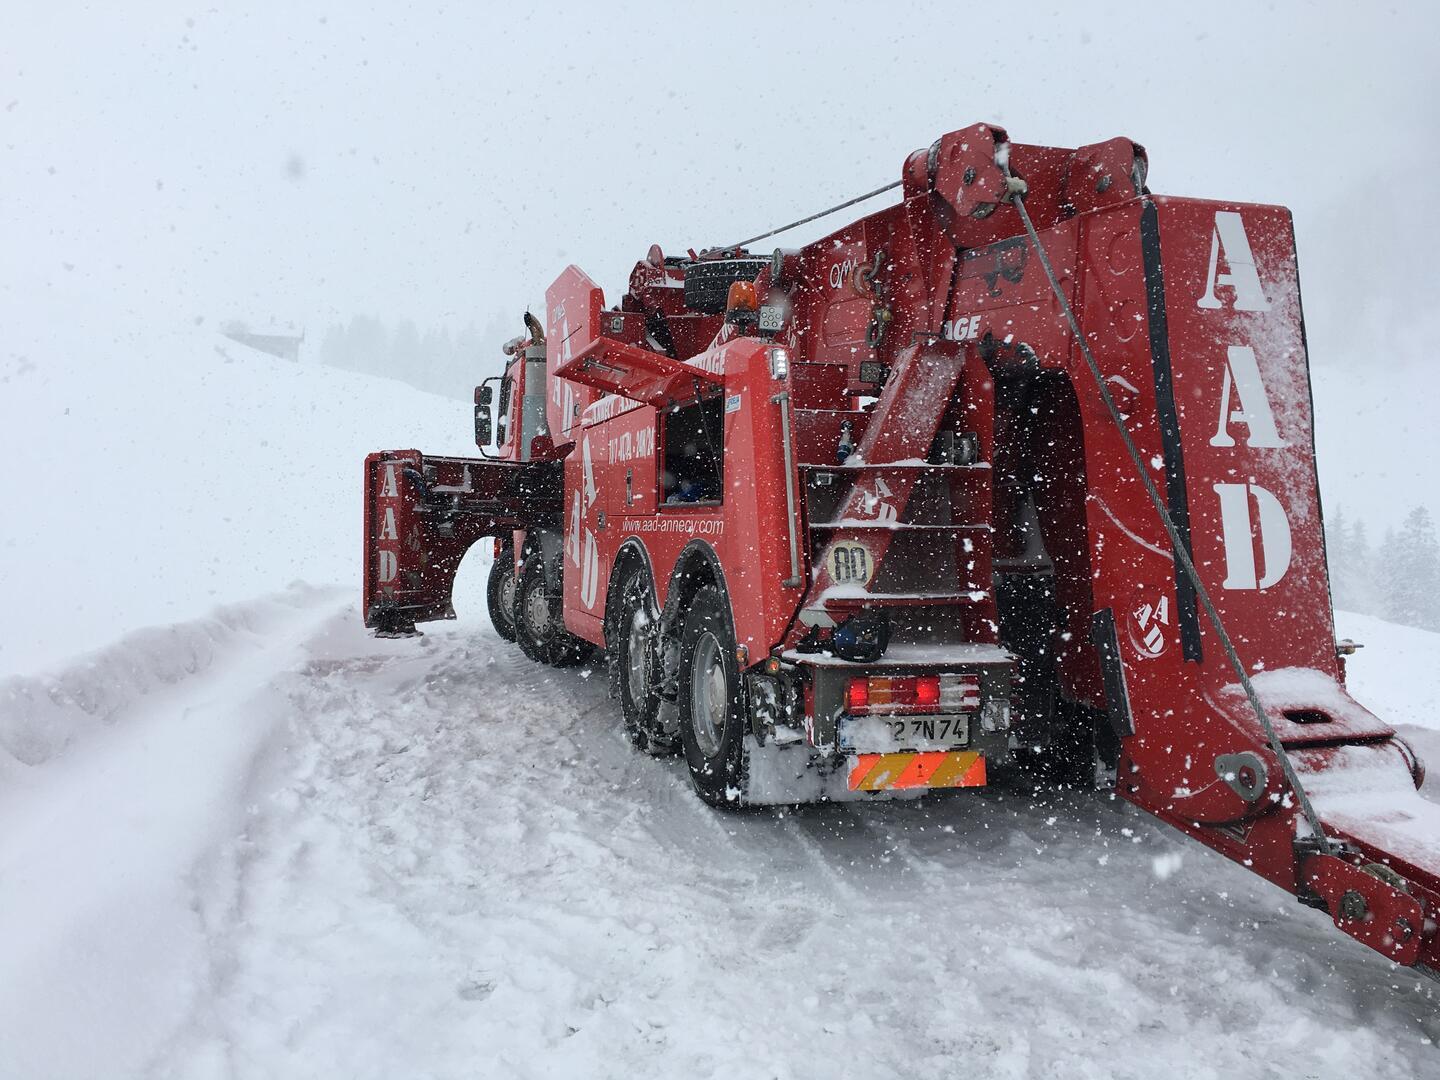 Annecy assistance dépannage neige conditions extrêmes en montagne